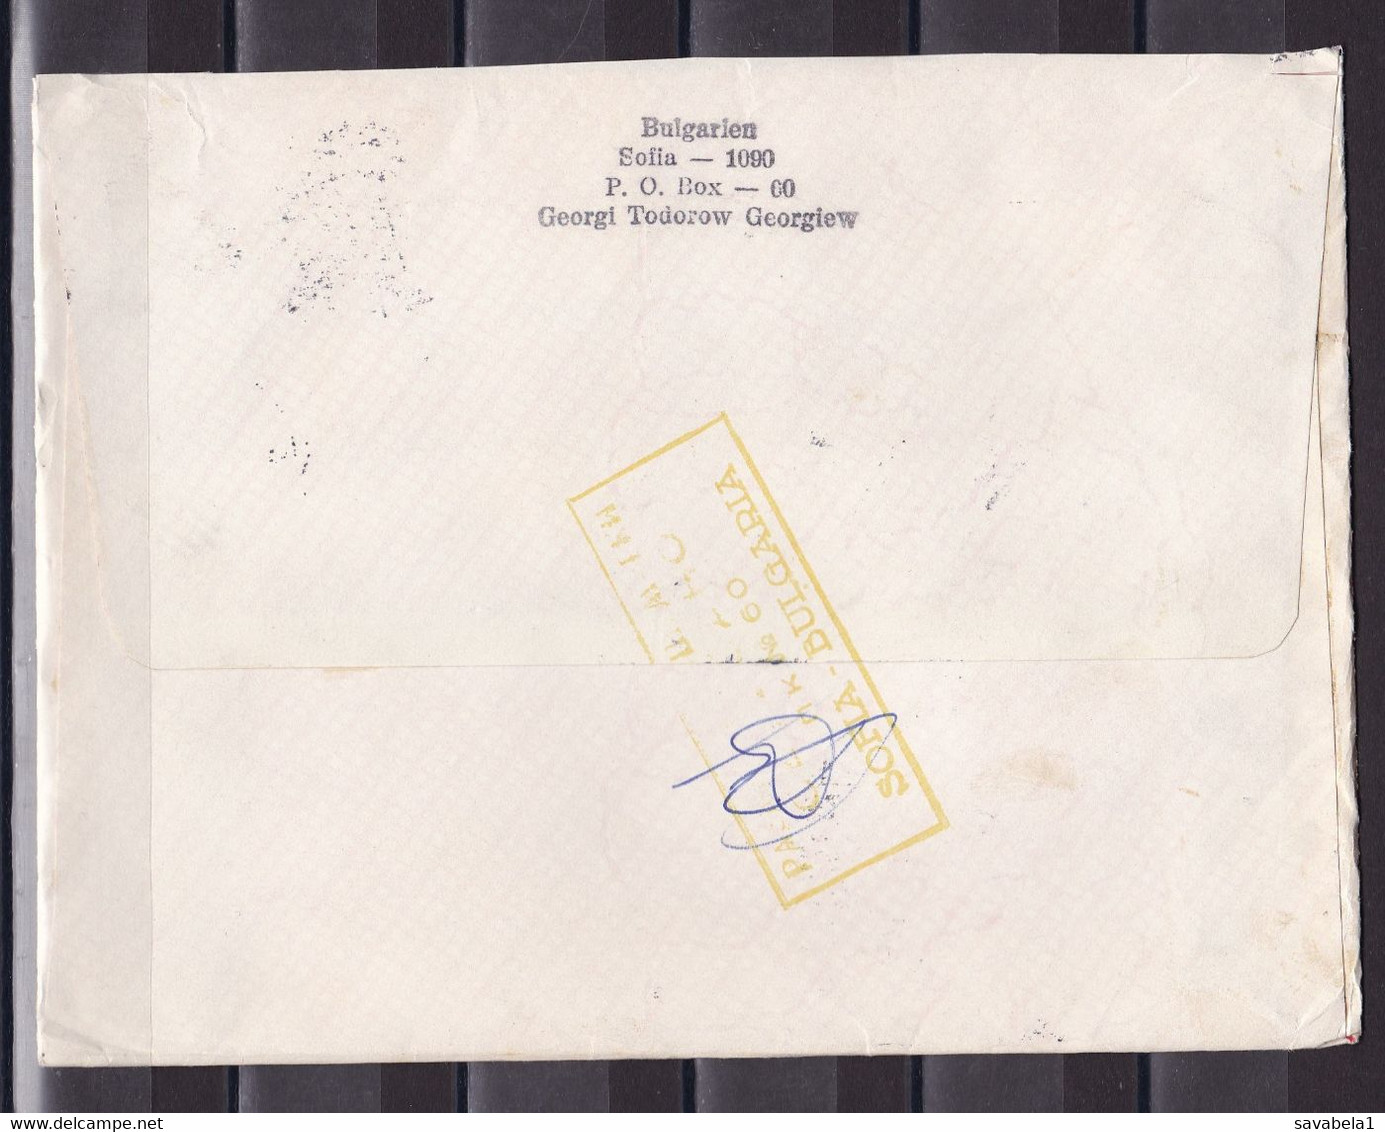 Bulgaria 199? Belgrade Yugoslavia Serbia Registered Cover - Briefe U. Dokumente